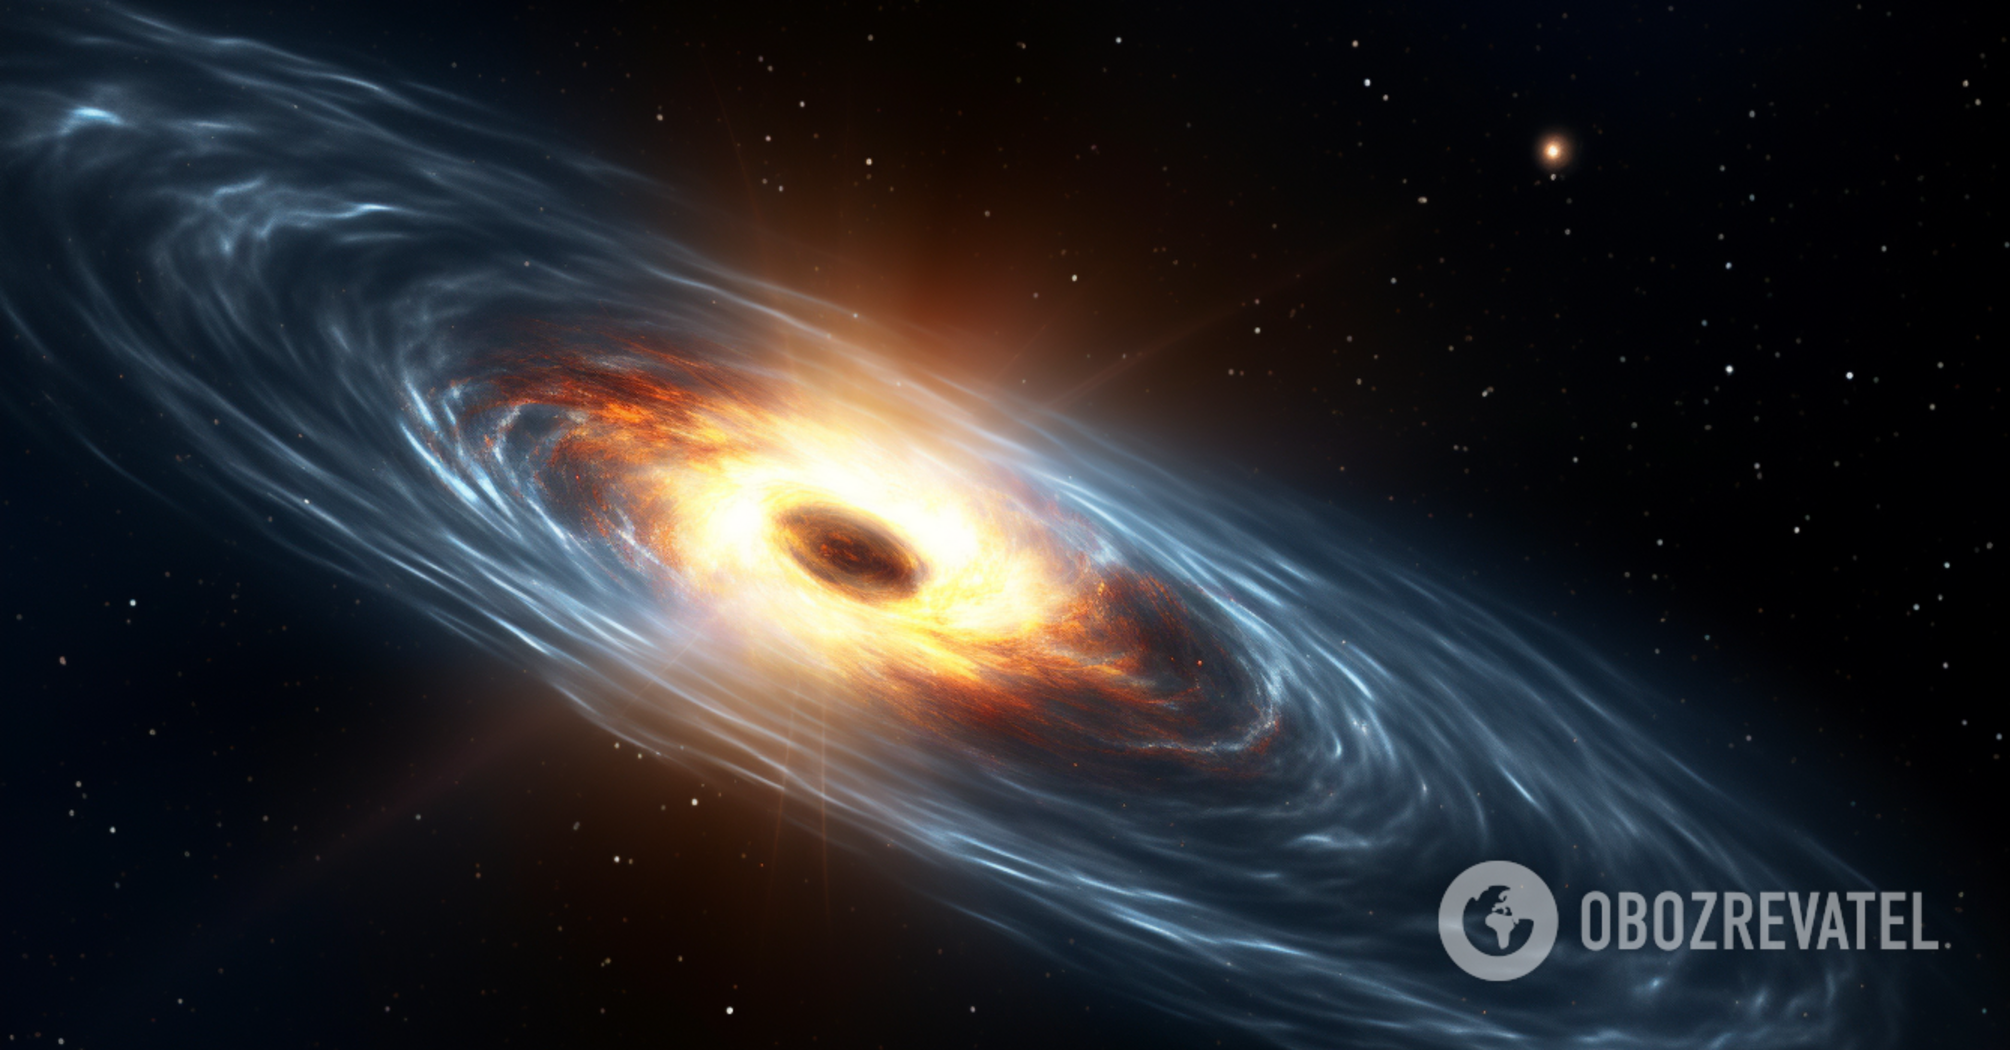 Tajemnica najpotężniejszych obiektów we Wszechświecie zdolnych do 'wykrwawiania' galaktyk została rozwiązana